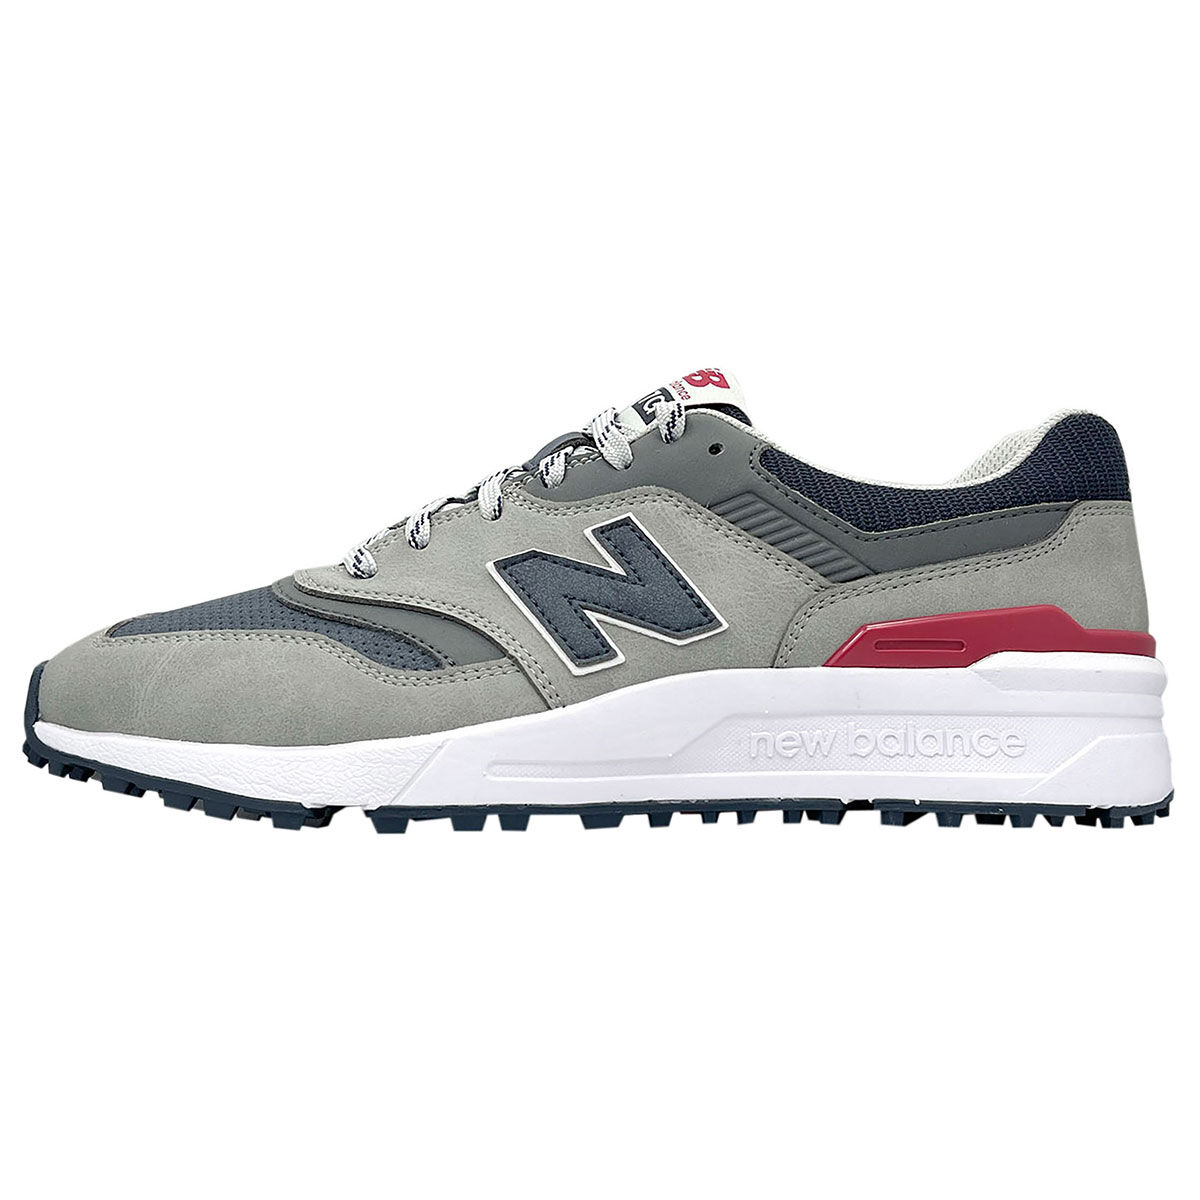 New Balance Men’s 997 Waterproof Spikeless Golf Shoes, Mens, Grey/navy, 8 | American Golf